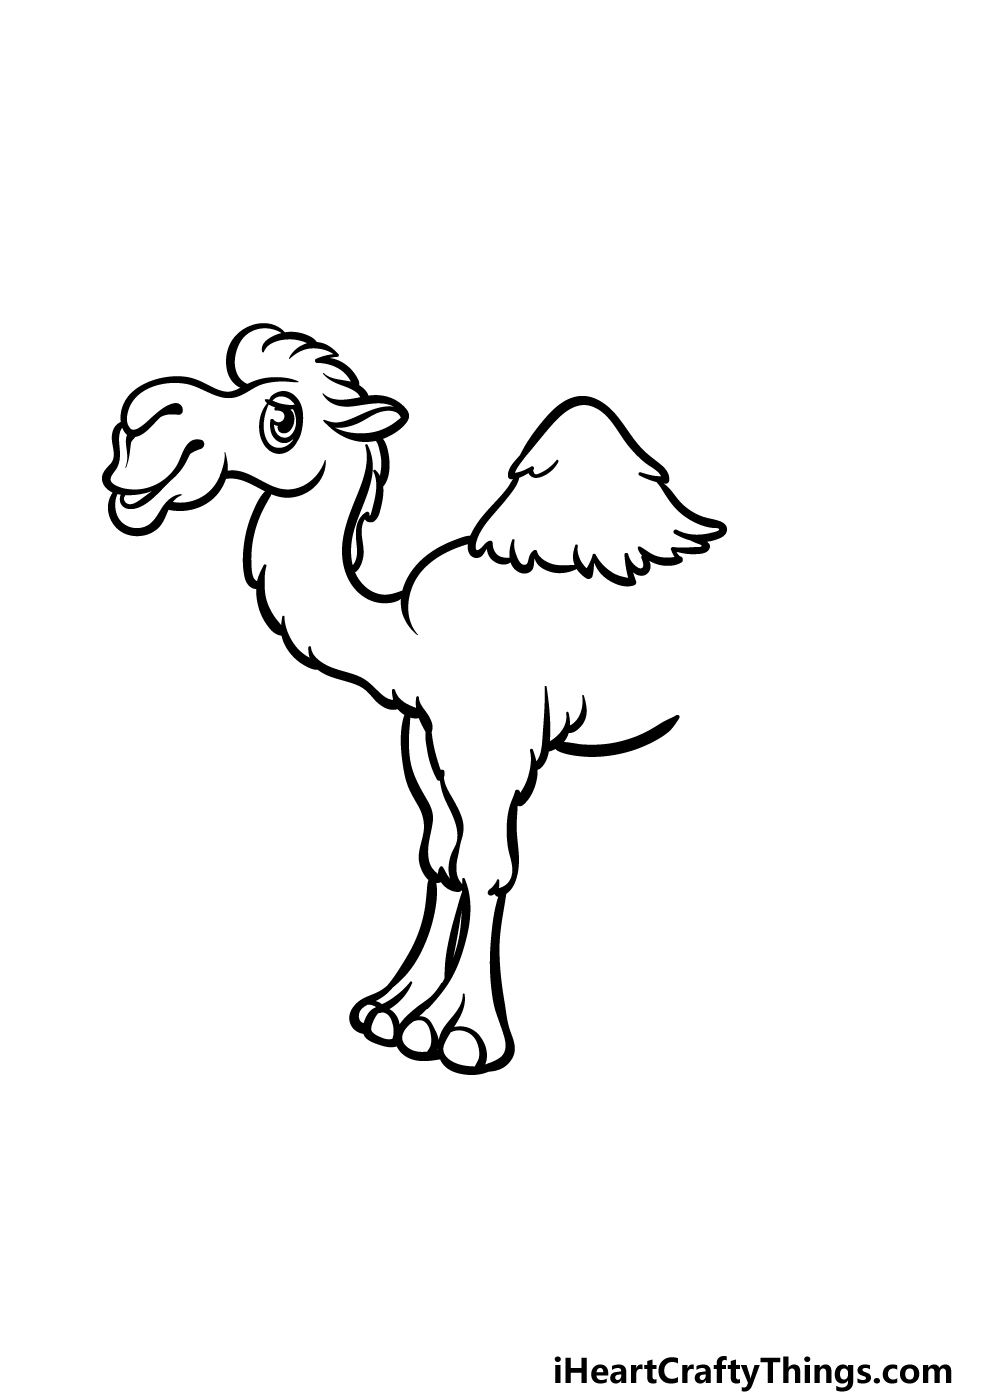 how to draw a cartoon camel step 4